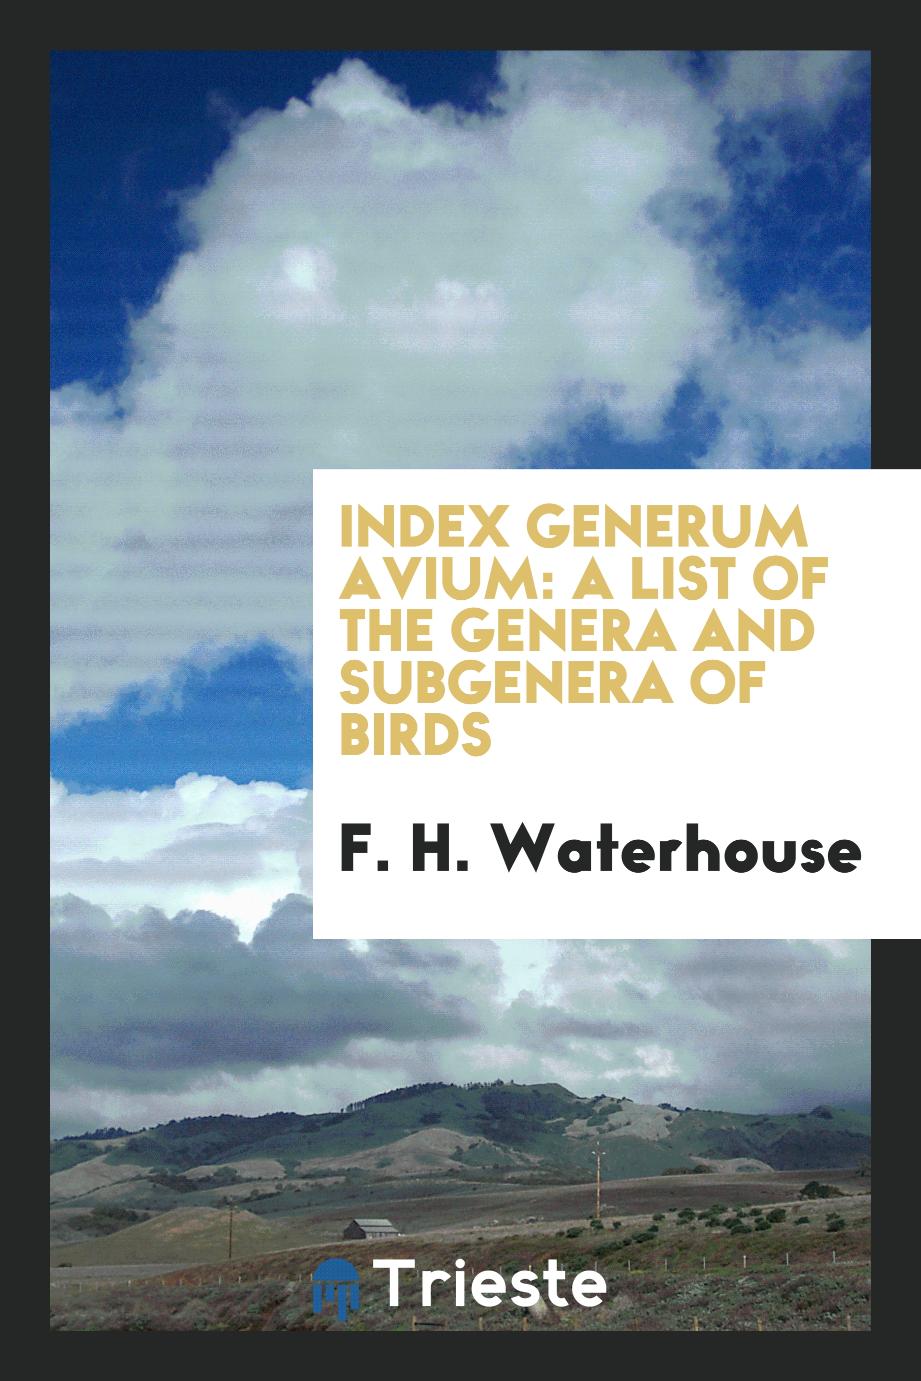 Index generum avium: a list of the genera and subgenera of birds